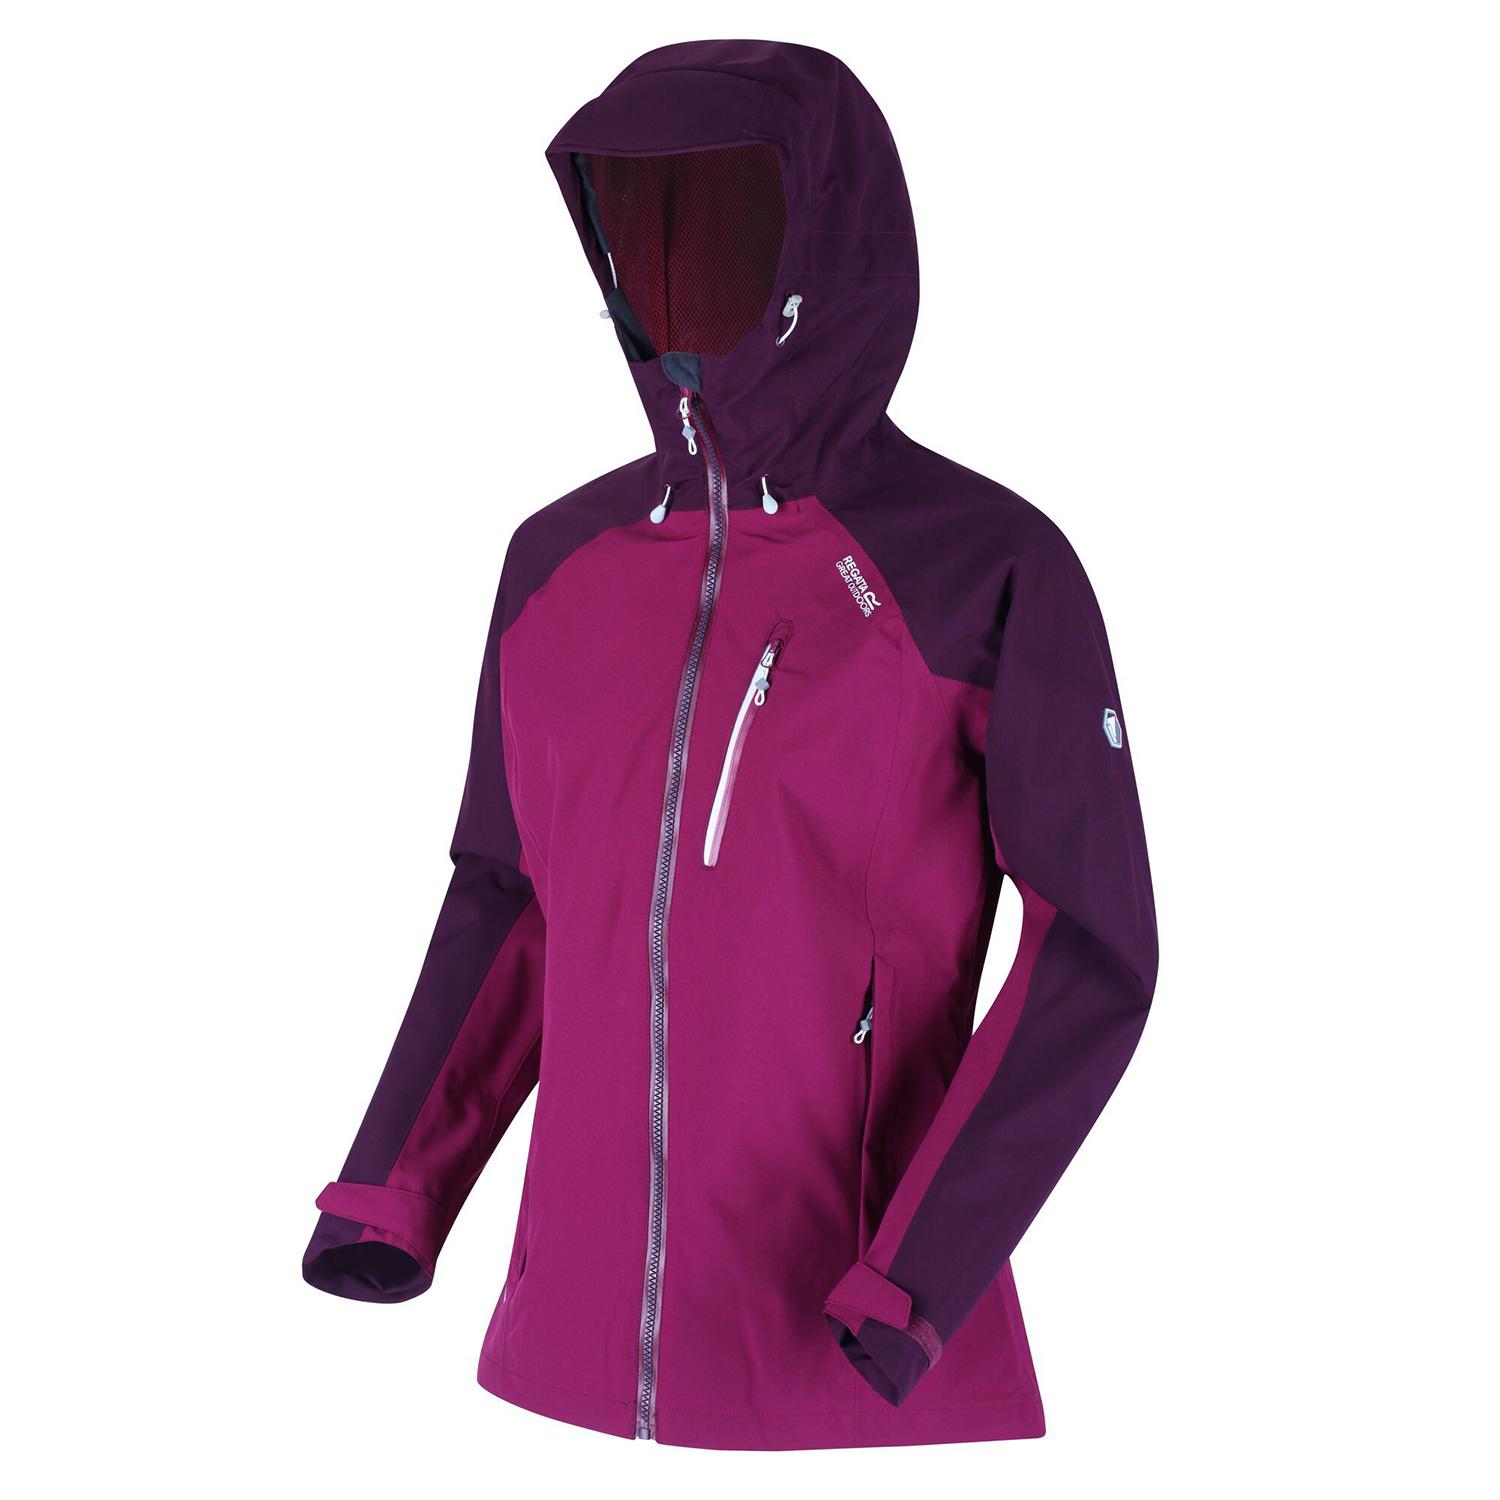 Buy Regatta RWW300 Birchdale Ladies Jacket Purple/Prune from Fane ...